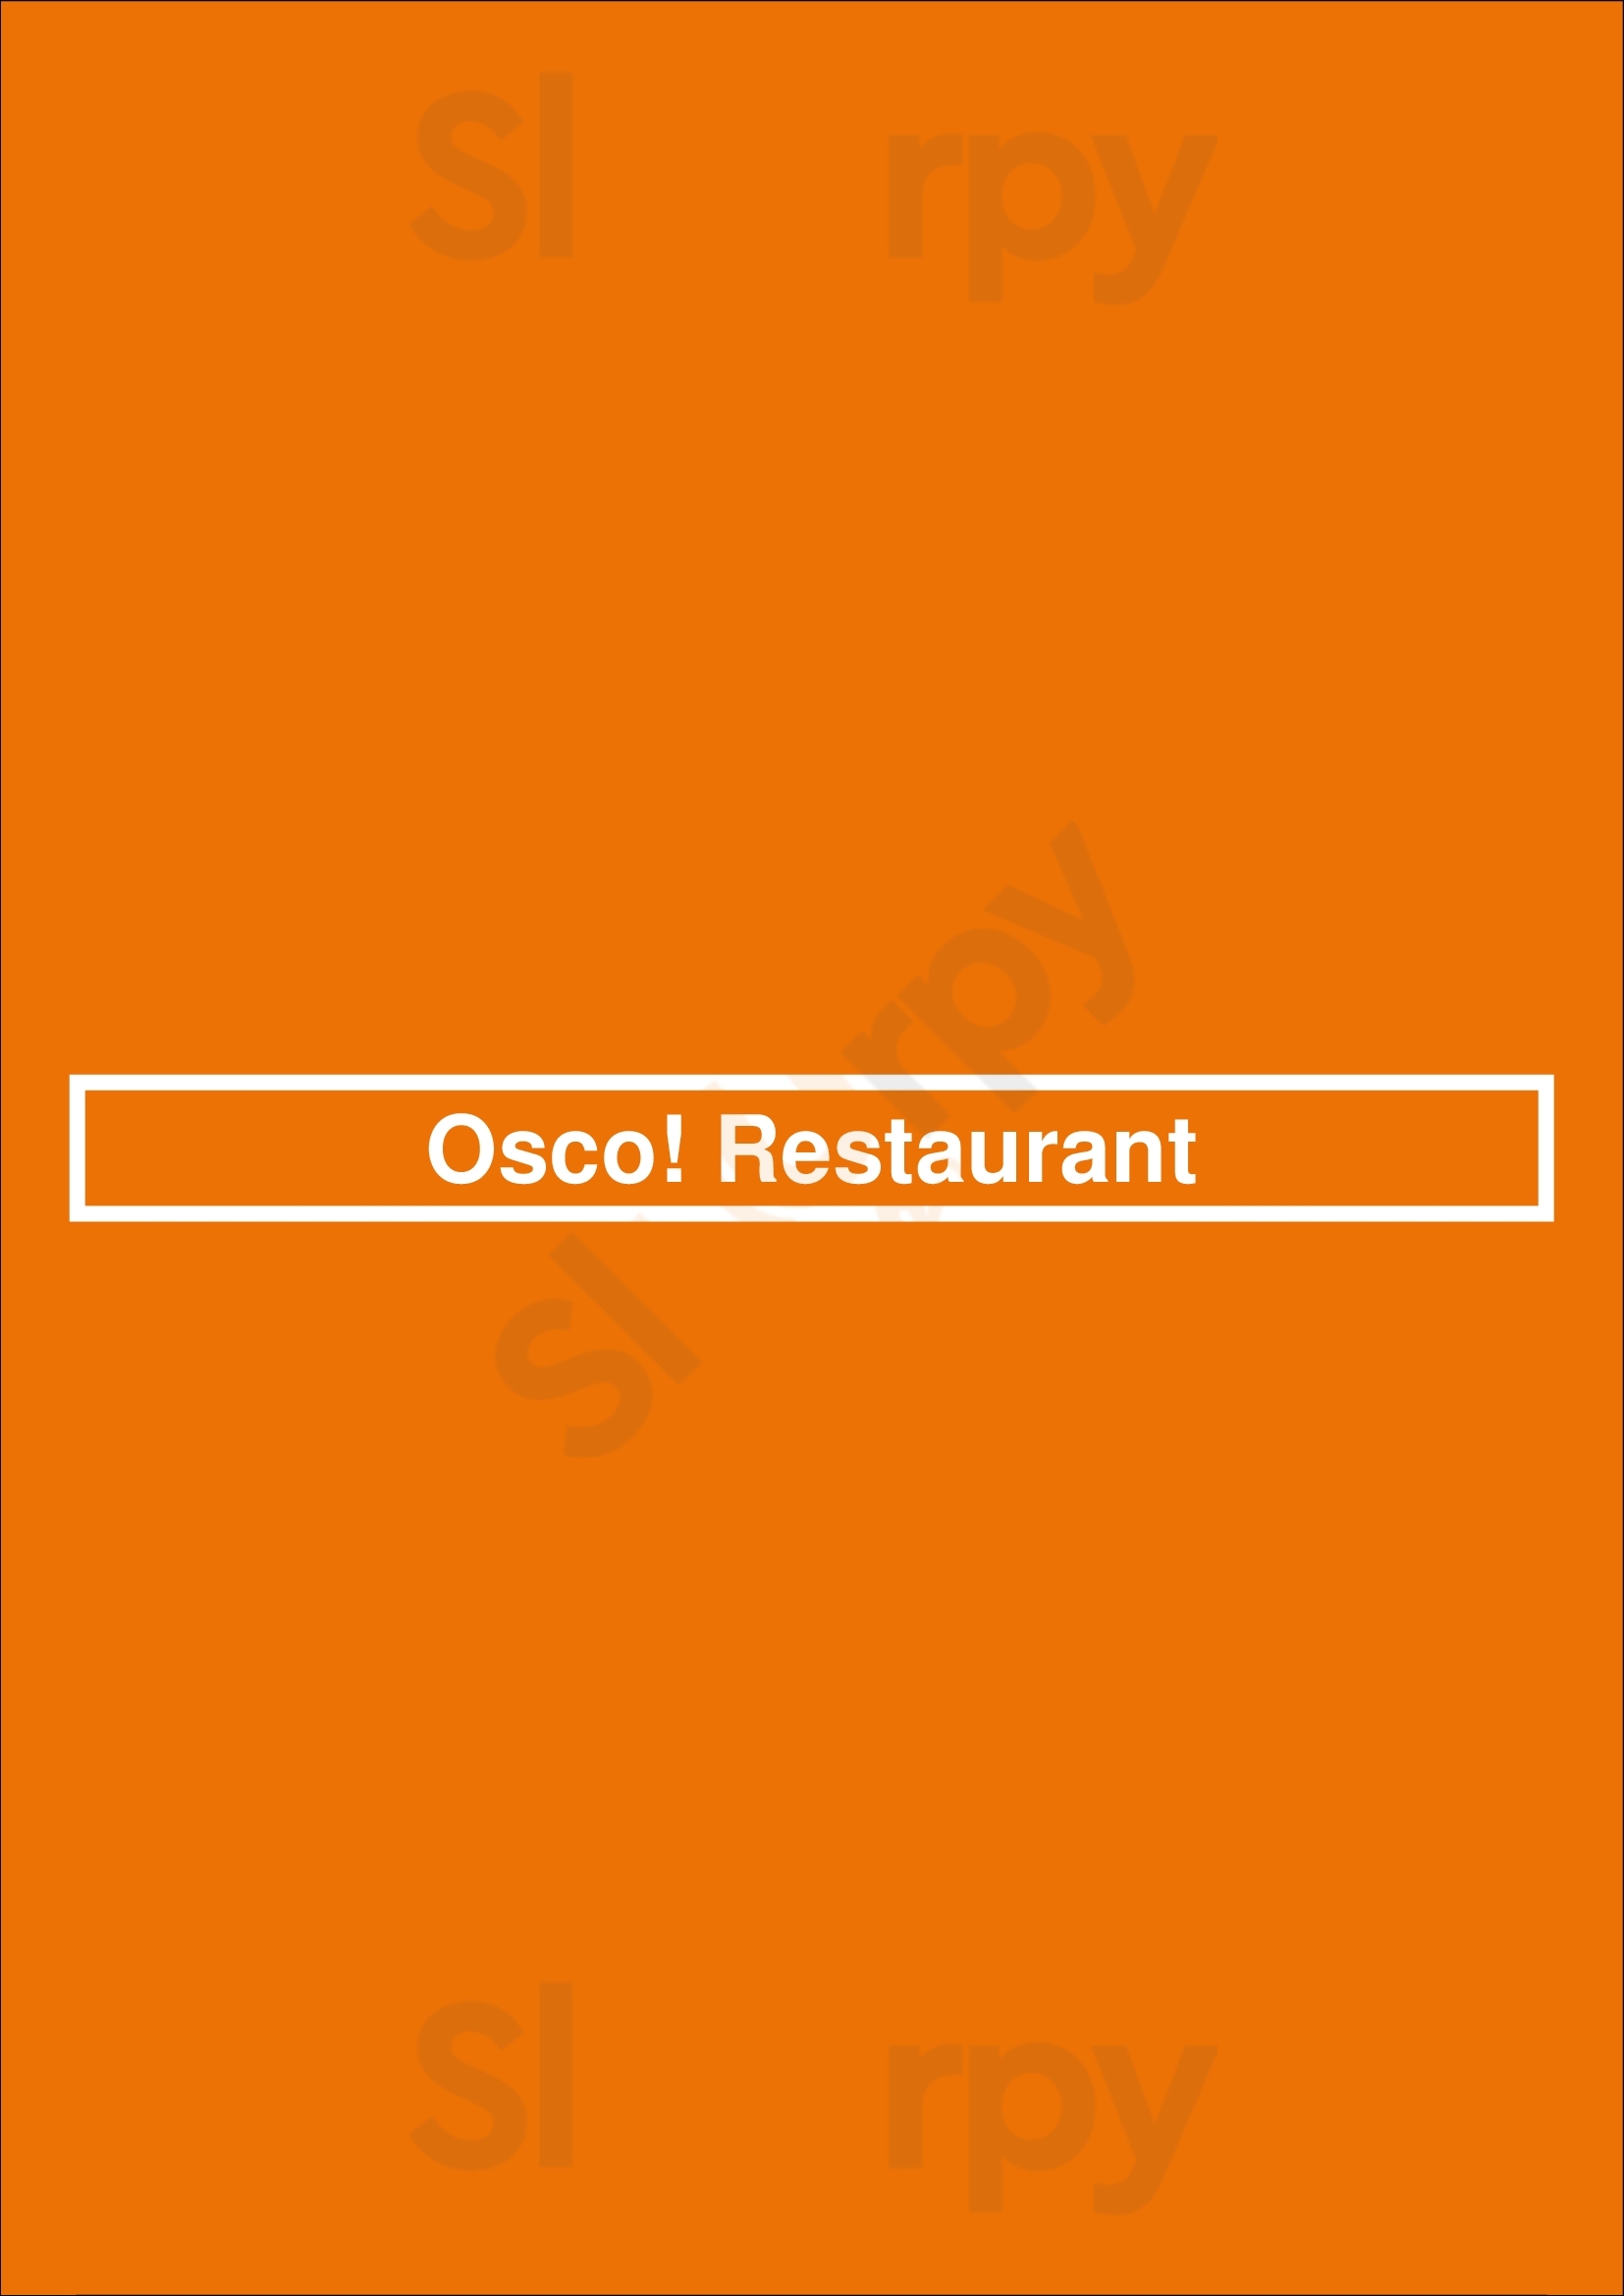 Osco! Restaurant Montreal Menu - 1